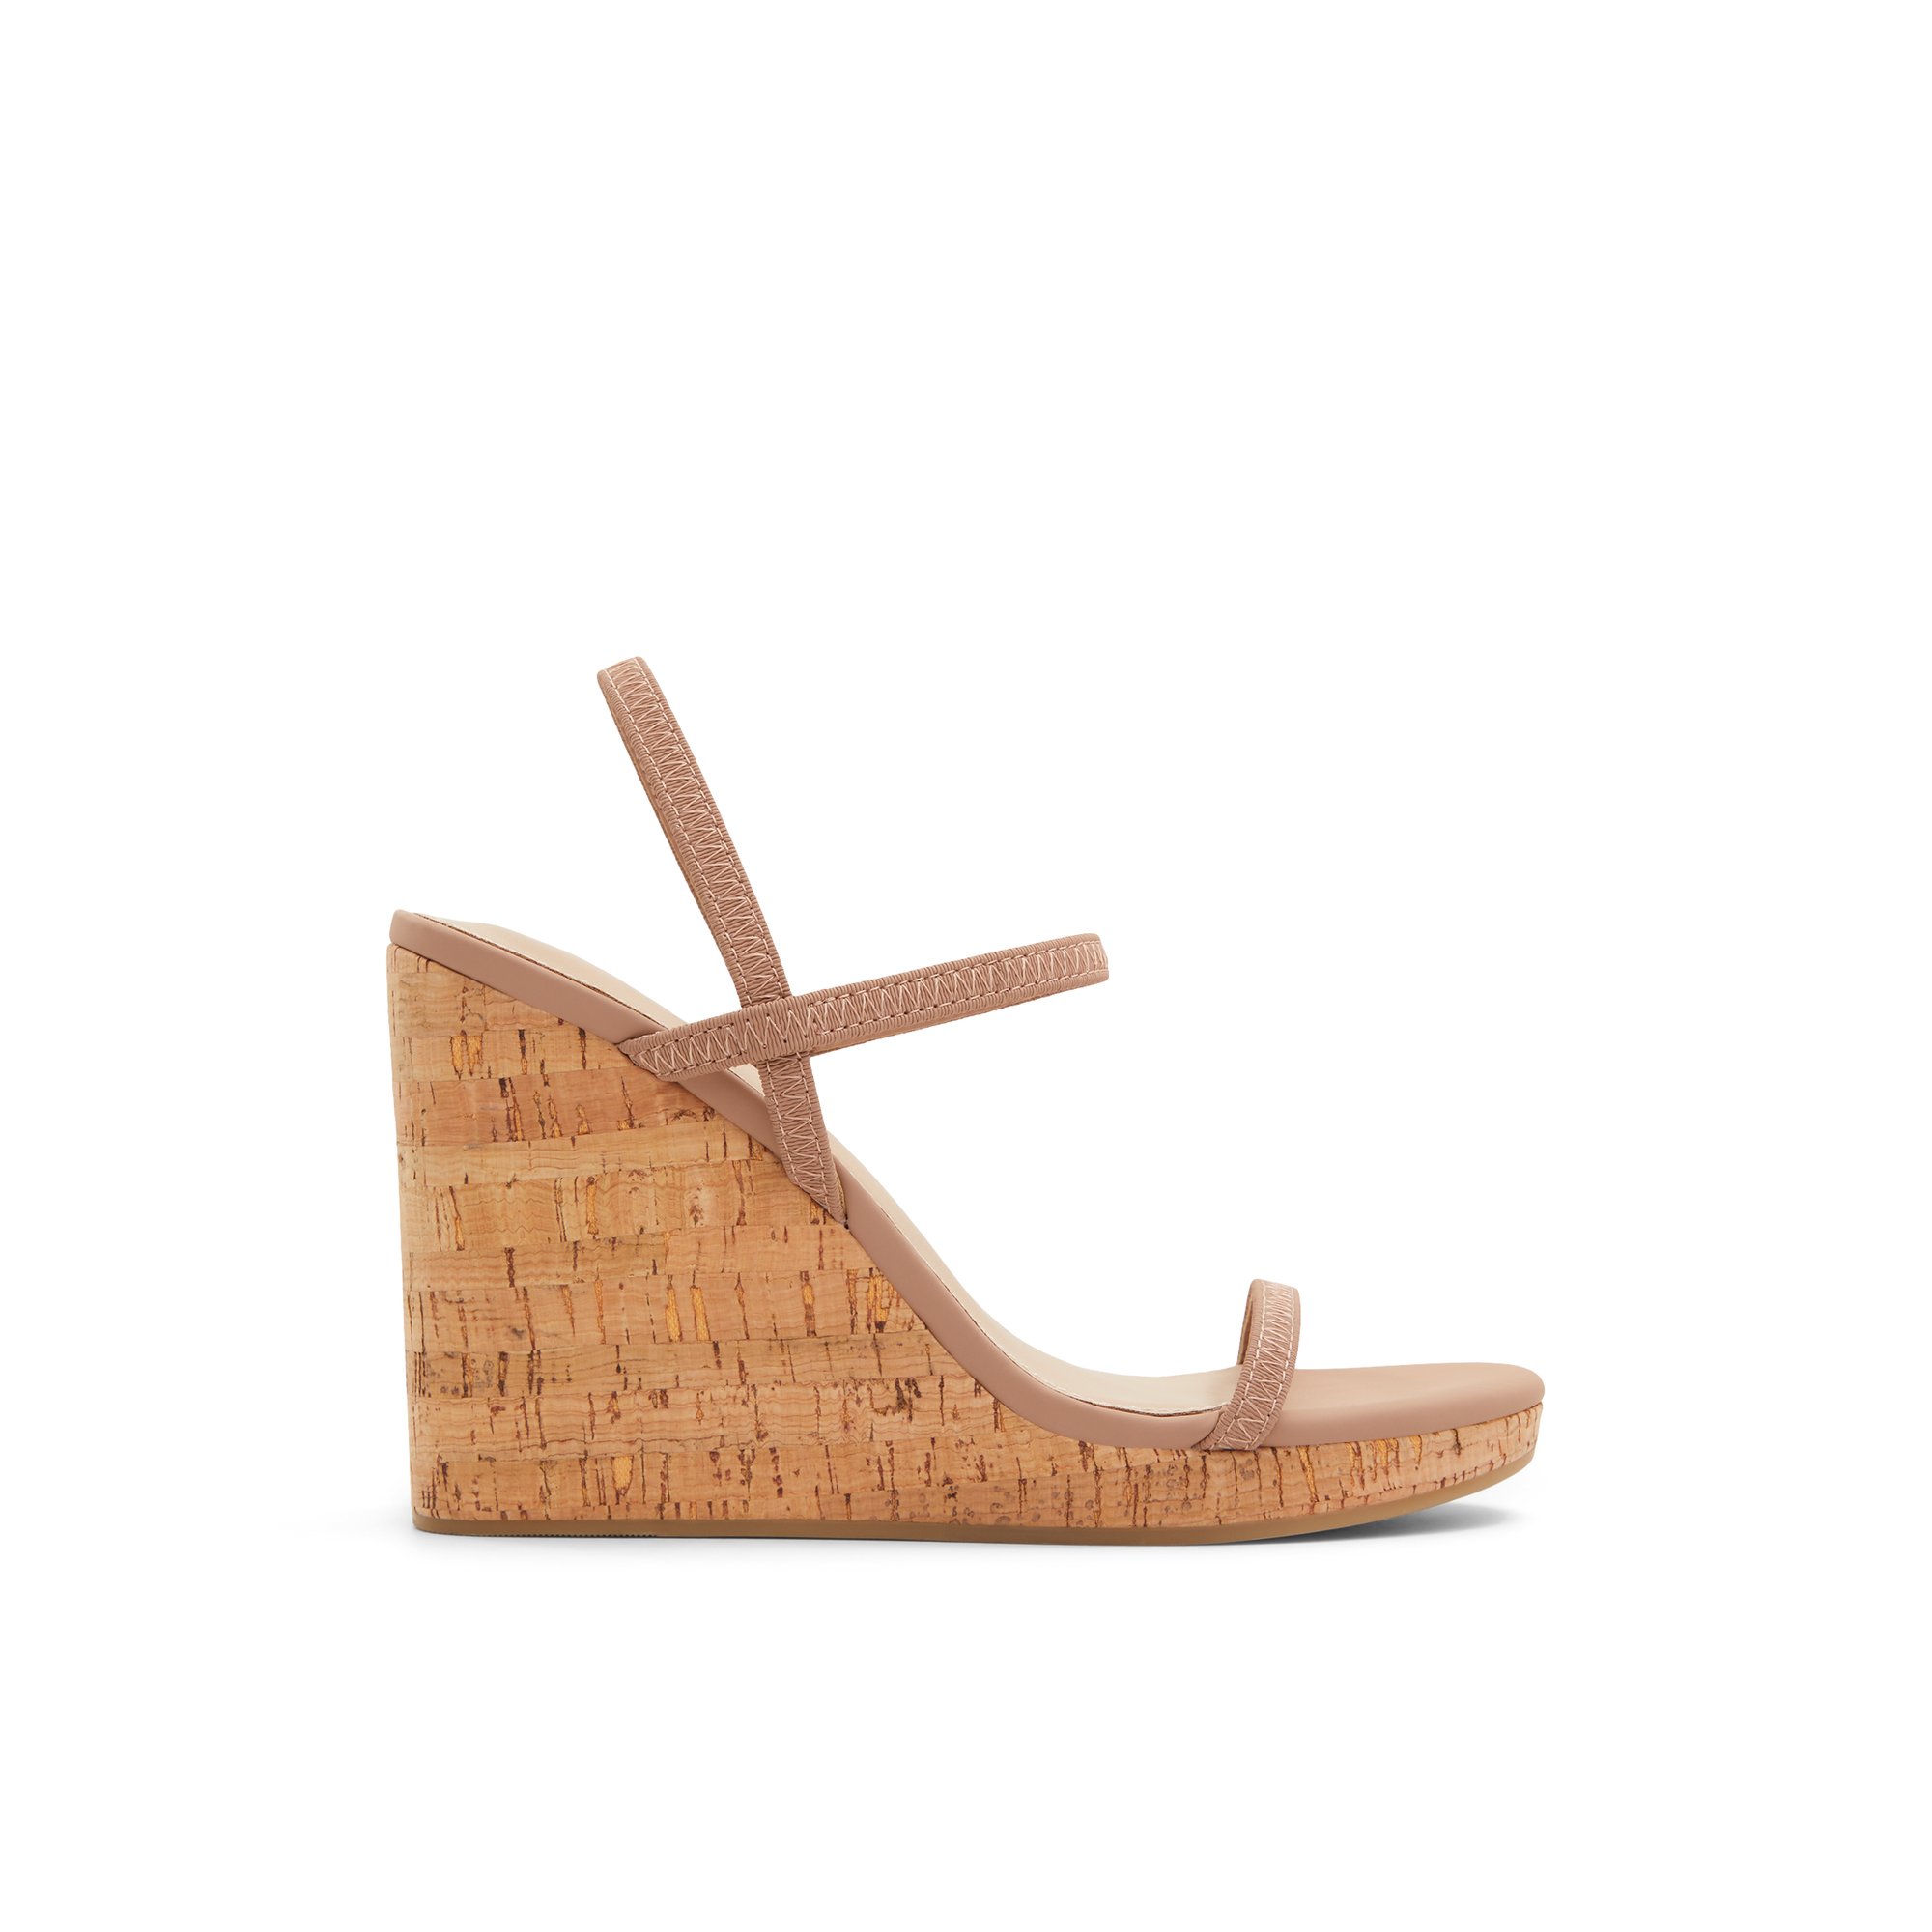 ALDO Mirabella - Women's Wedge Sandals - Beige